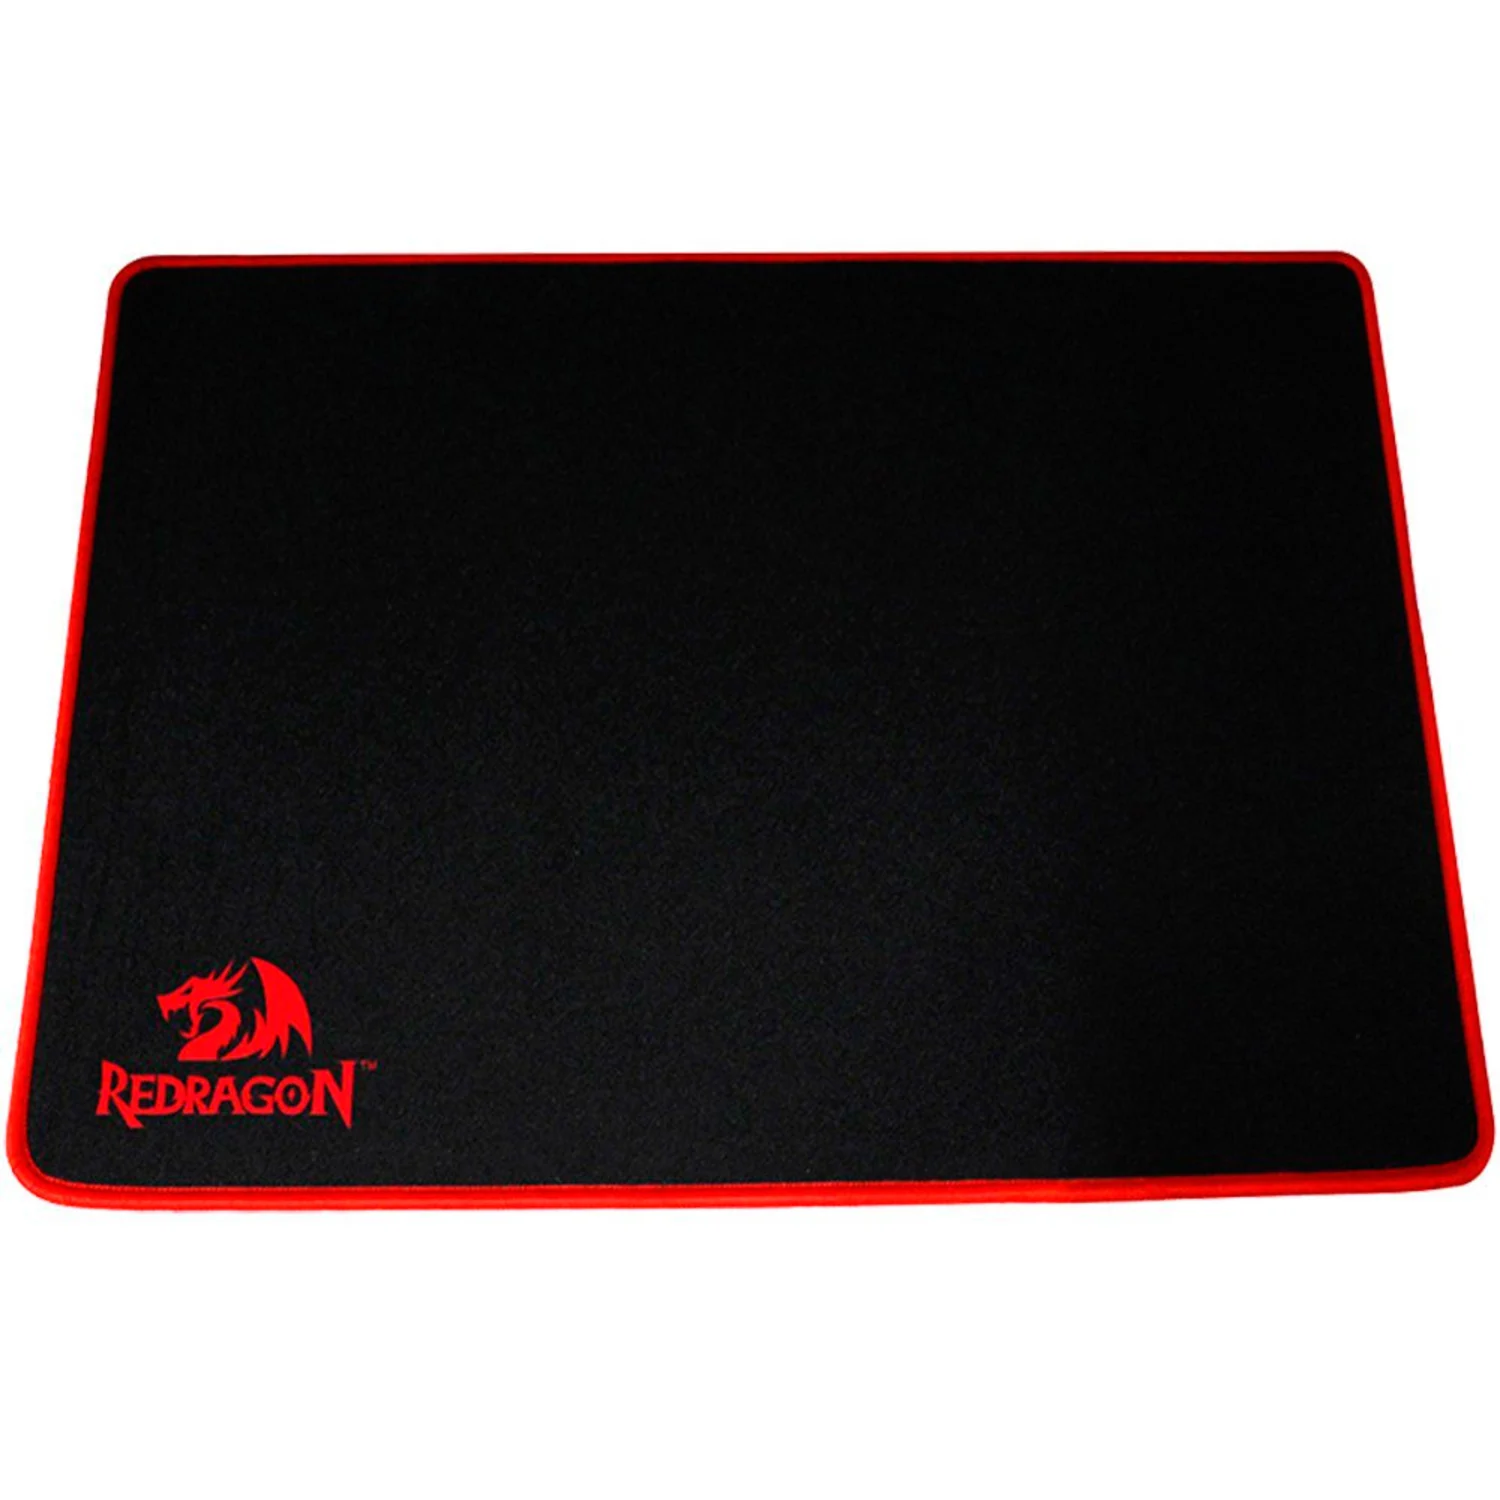 Mousepad Redragon Archelon Large P002 - Preto